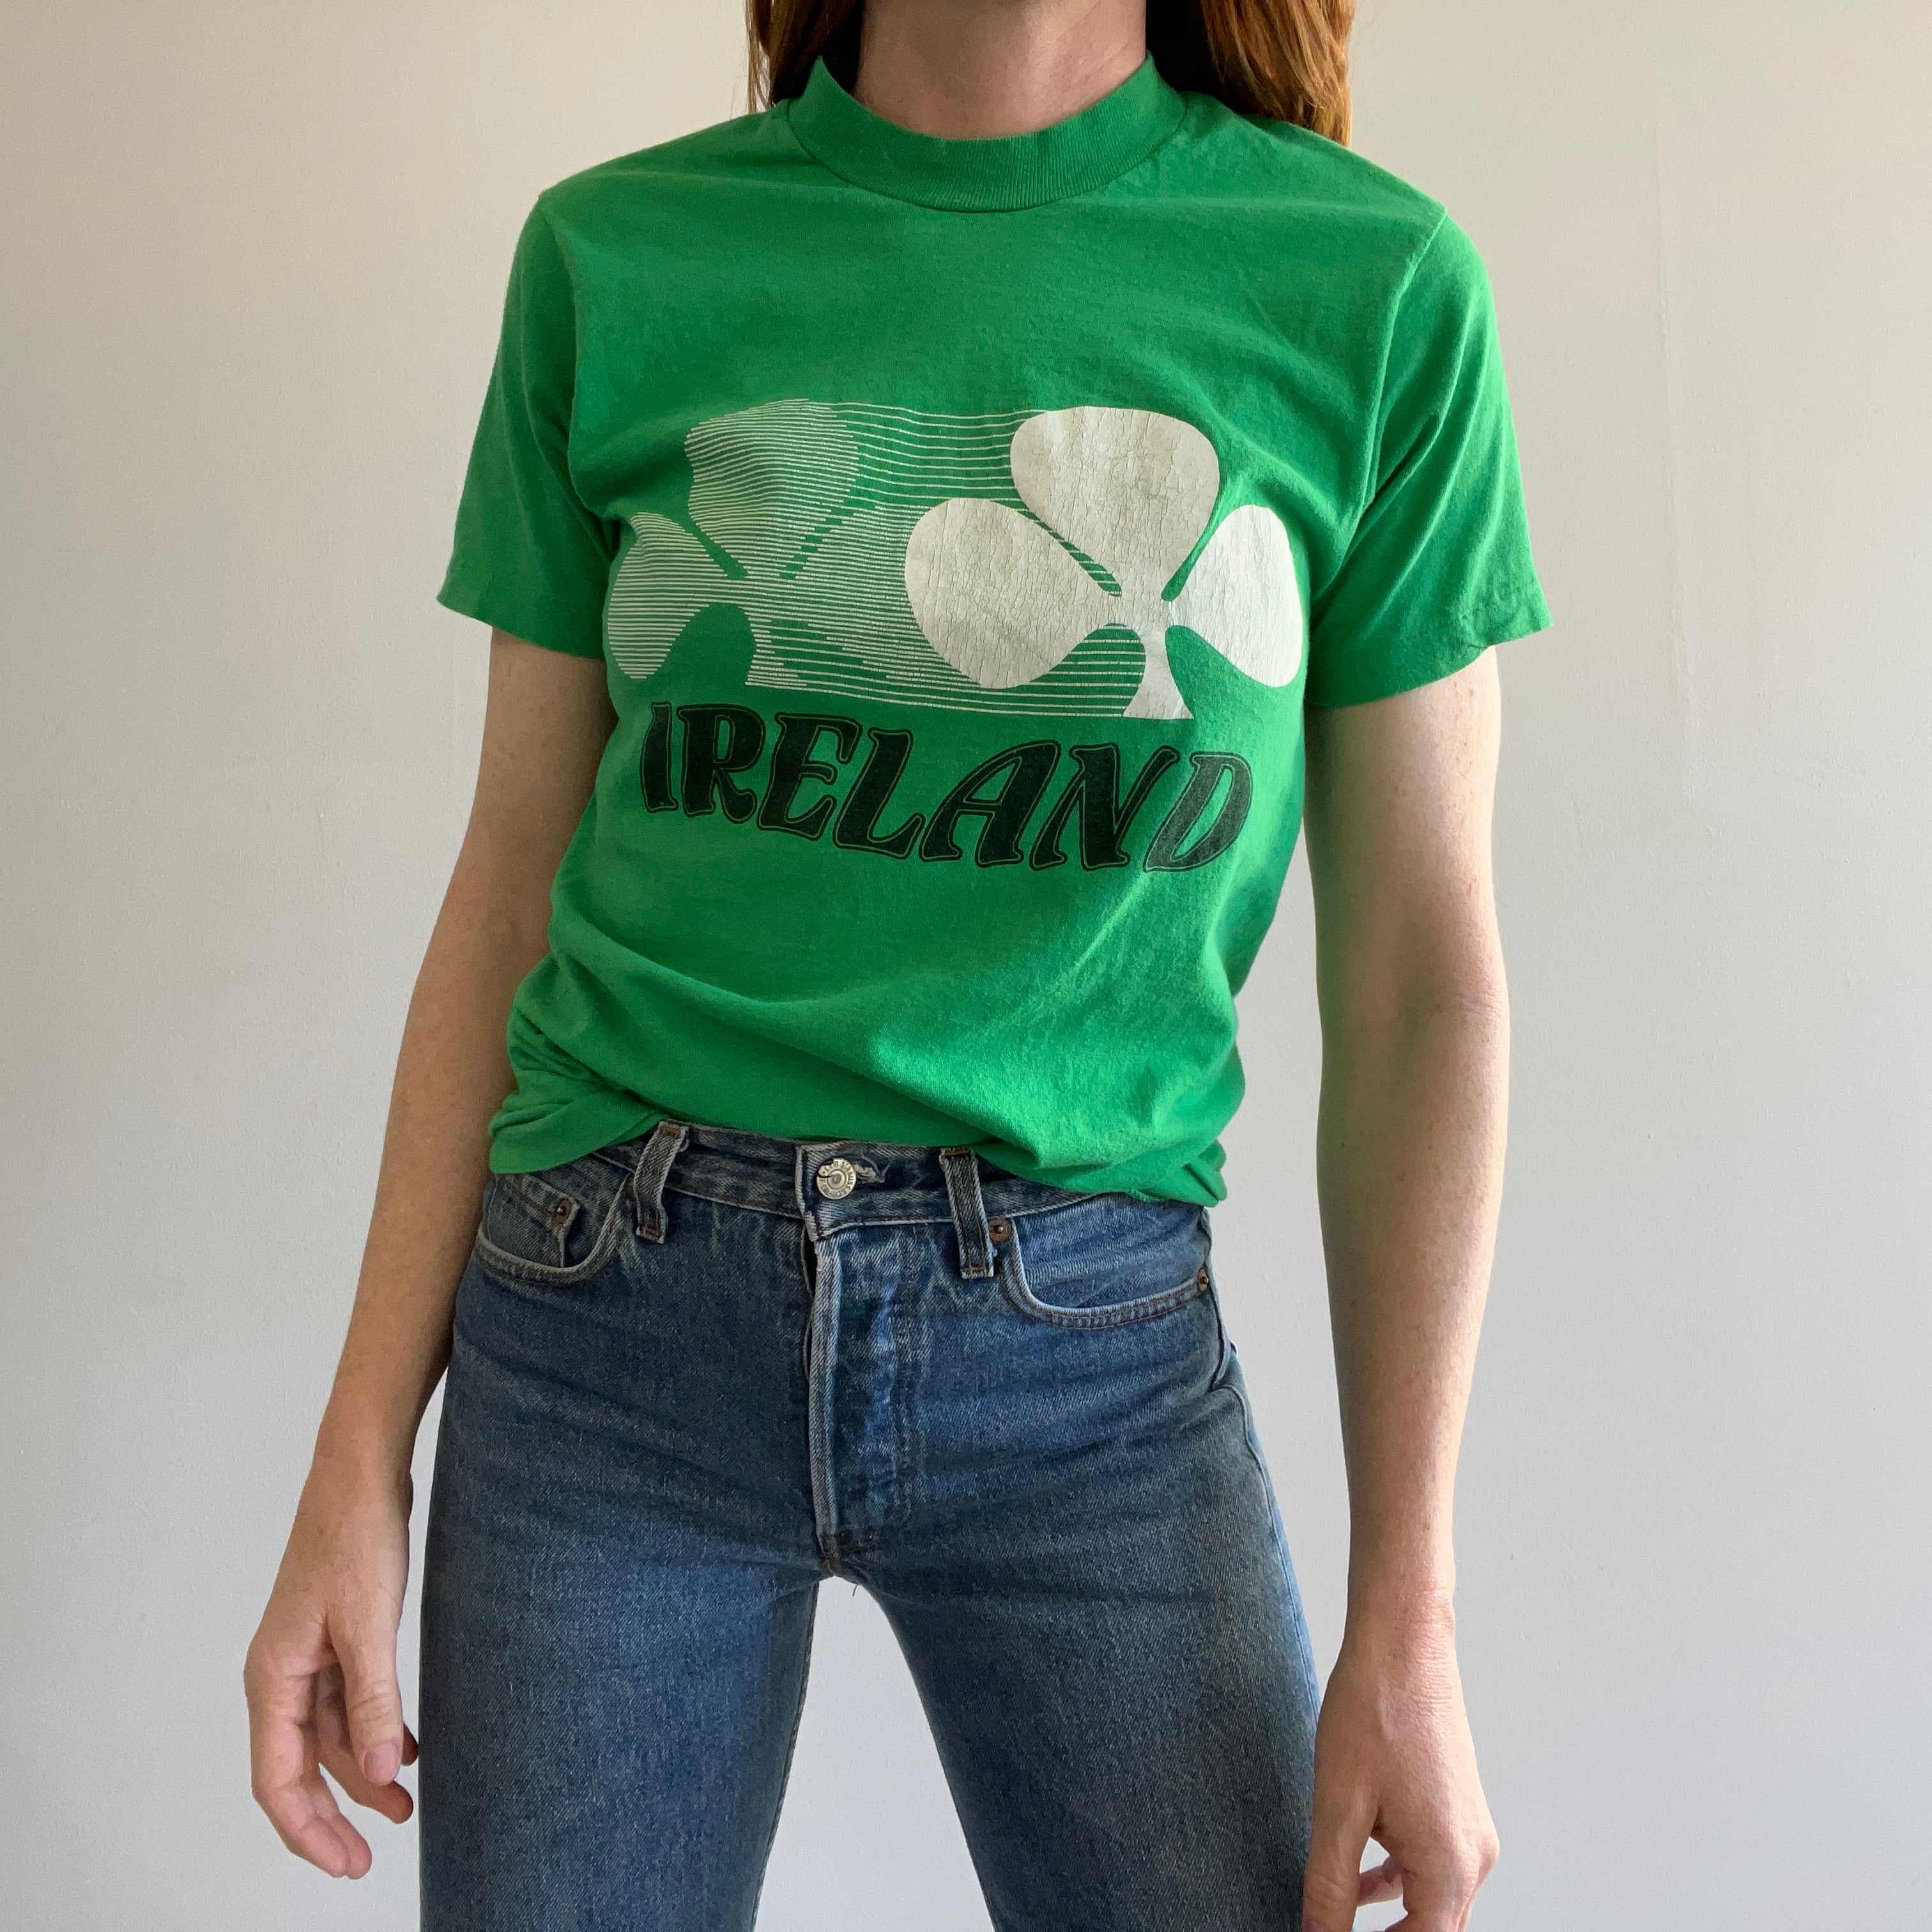 T-shirt Irlande des années 1980